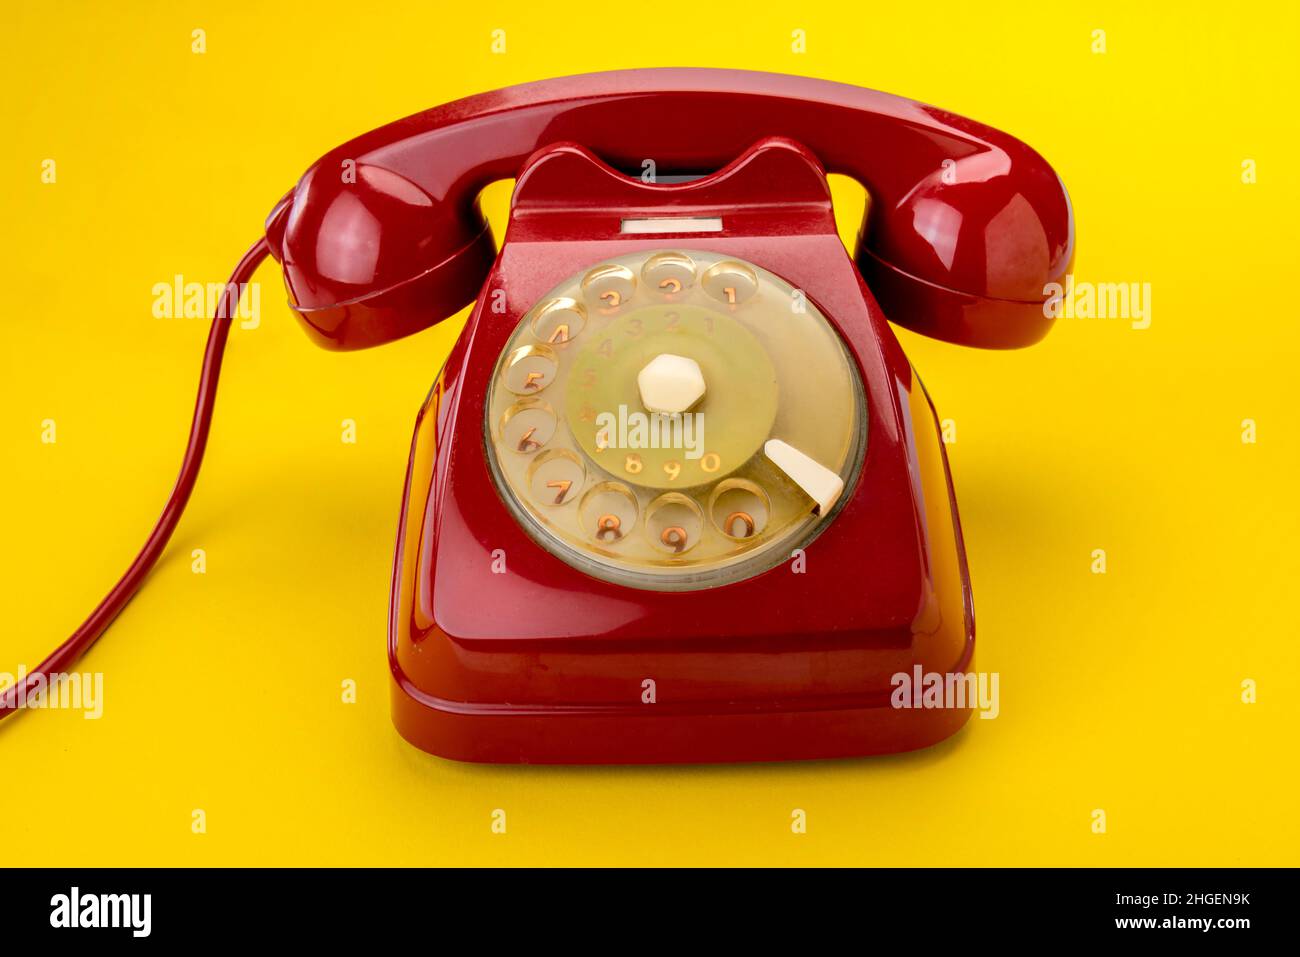 Vieux téléphon à cadran rotatif rouge isolé sur fond jaune Banque D'Images